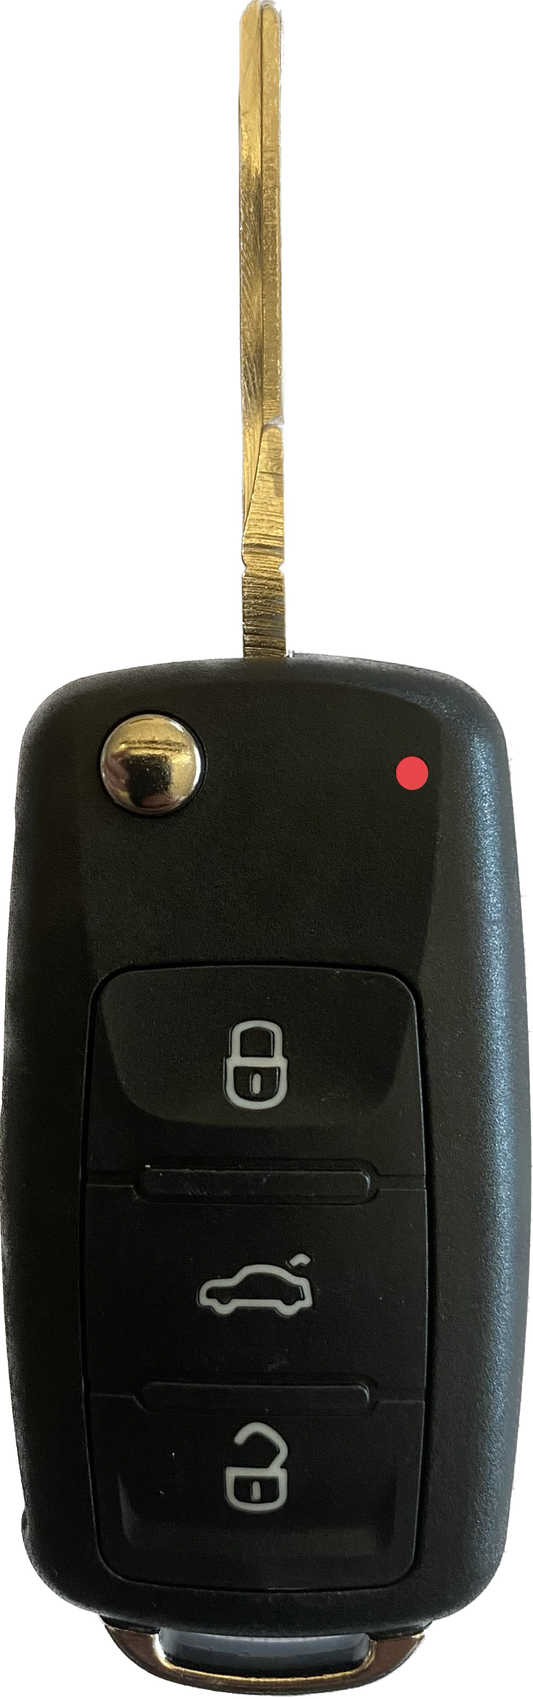 Autoschlüssel komplett mit Platine Funk Klappschlüssel kompatibel für VW 3 Tasten 5K0 837 202